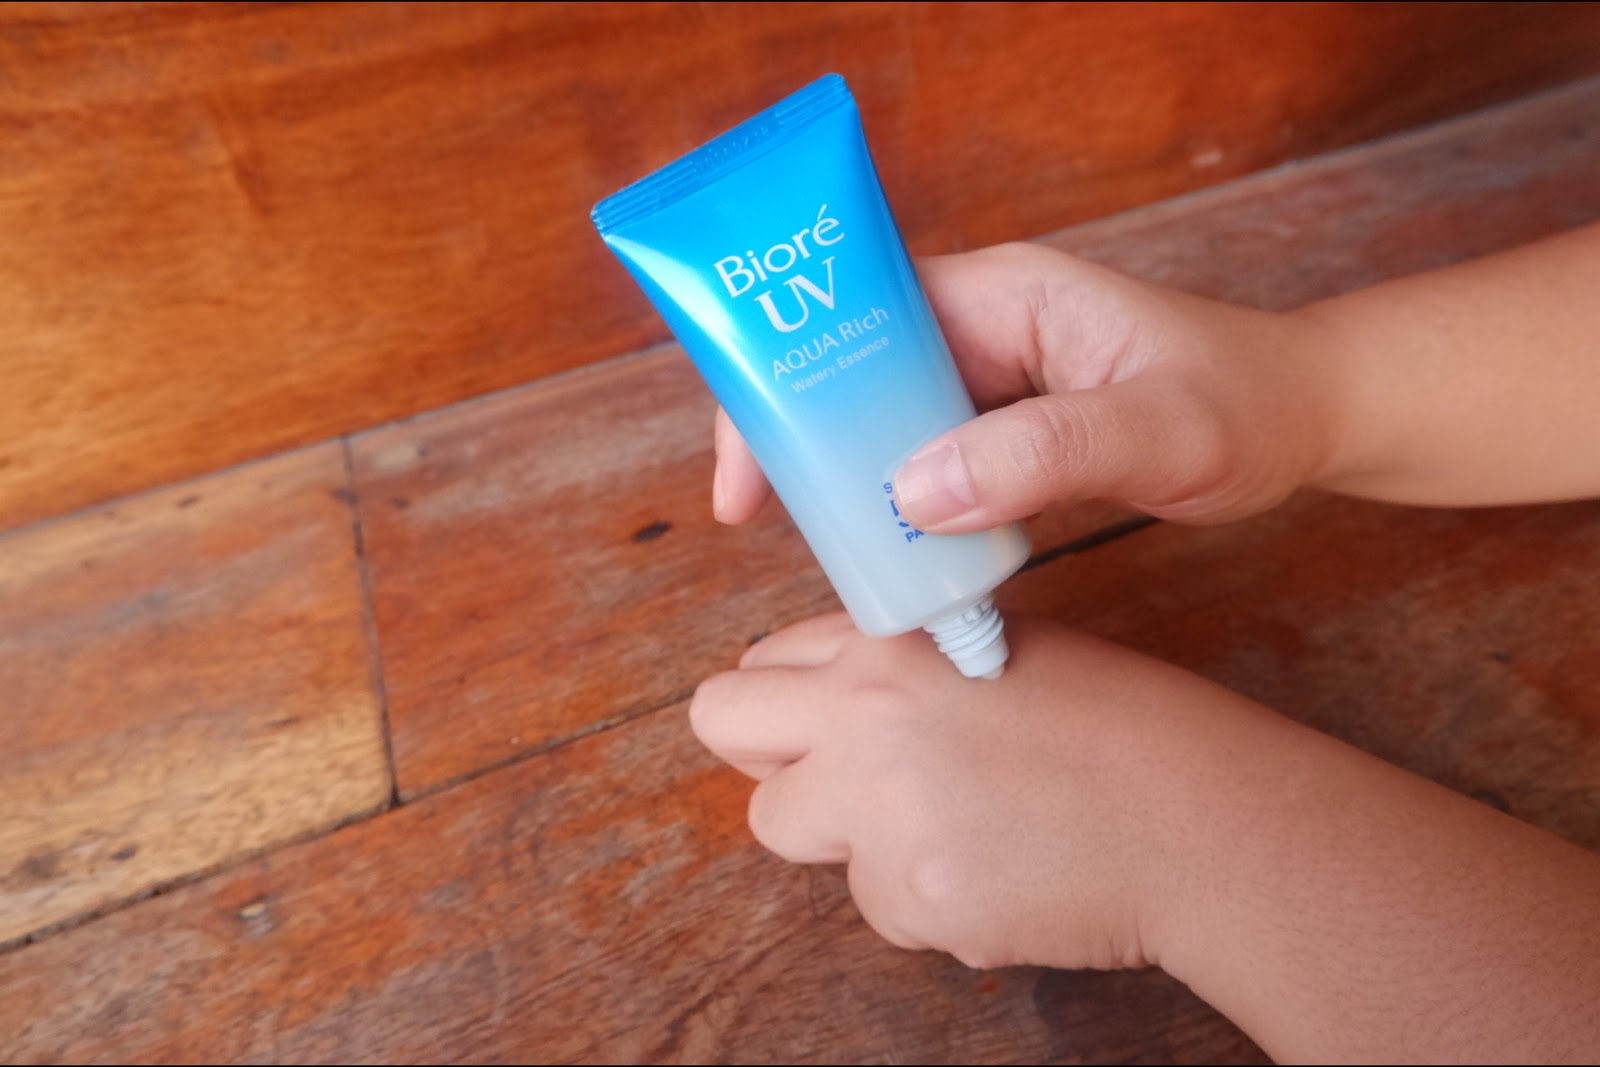 Biore UV Skin smoothness Sunscreen Matting Emulsion spf50. Babe super Fluid Color SPF 50. Biore uv aqua rich spf 50